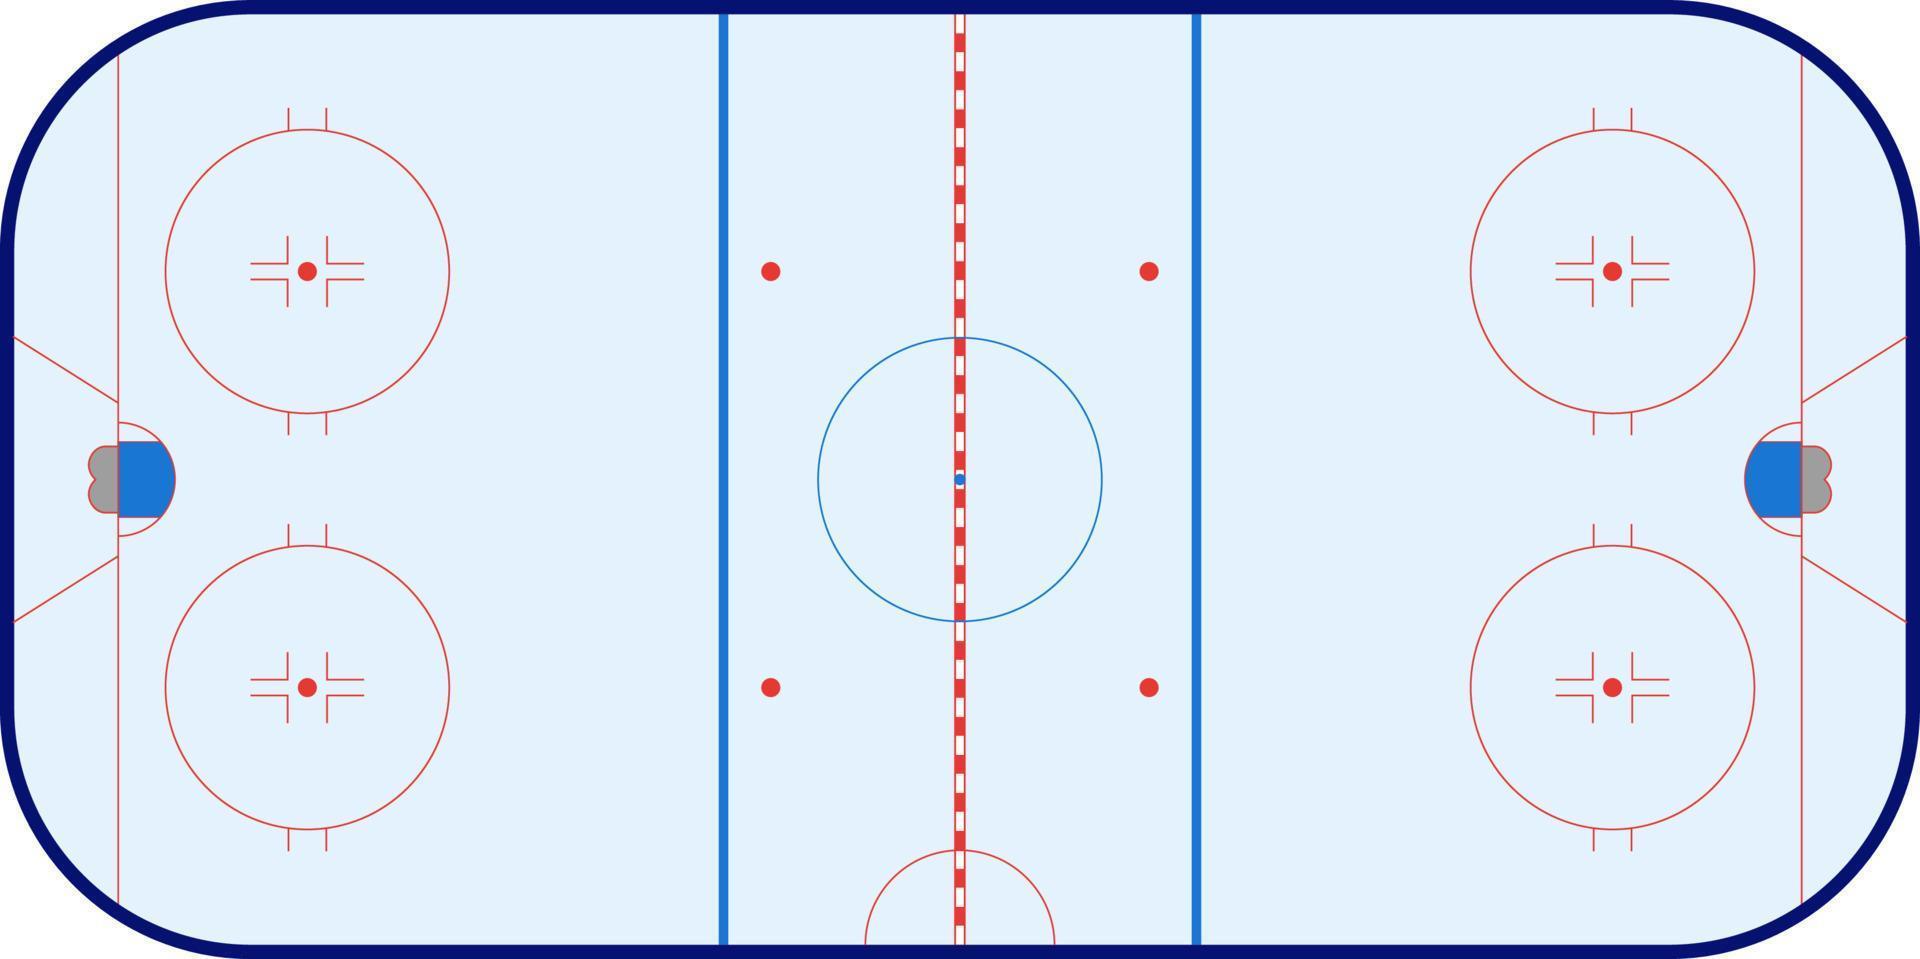 leeres schema der eishockeybahn unter einhaltung der standardproportionen, mit markierungen, vektor isoliert.